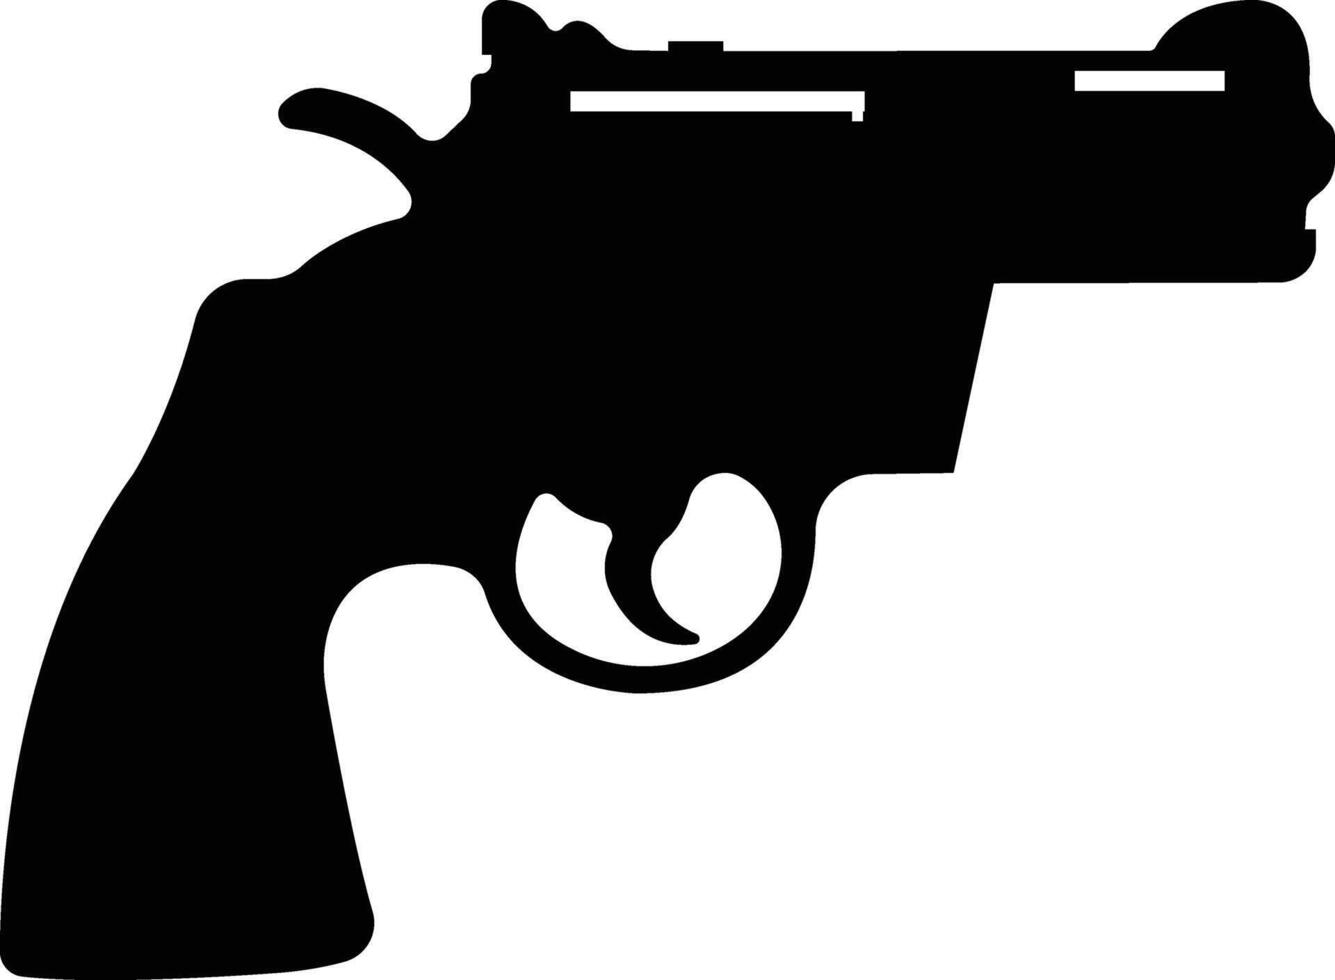 pistol ikon i platt från armén och krig isolerat på symbol vektor för appar och hemsida. pistol, gevär, revolver för vild väst begrepp, polis officer ammunition eller militär vapen.